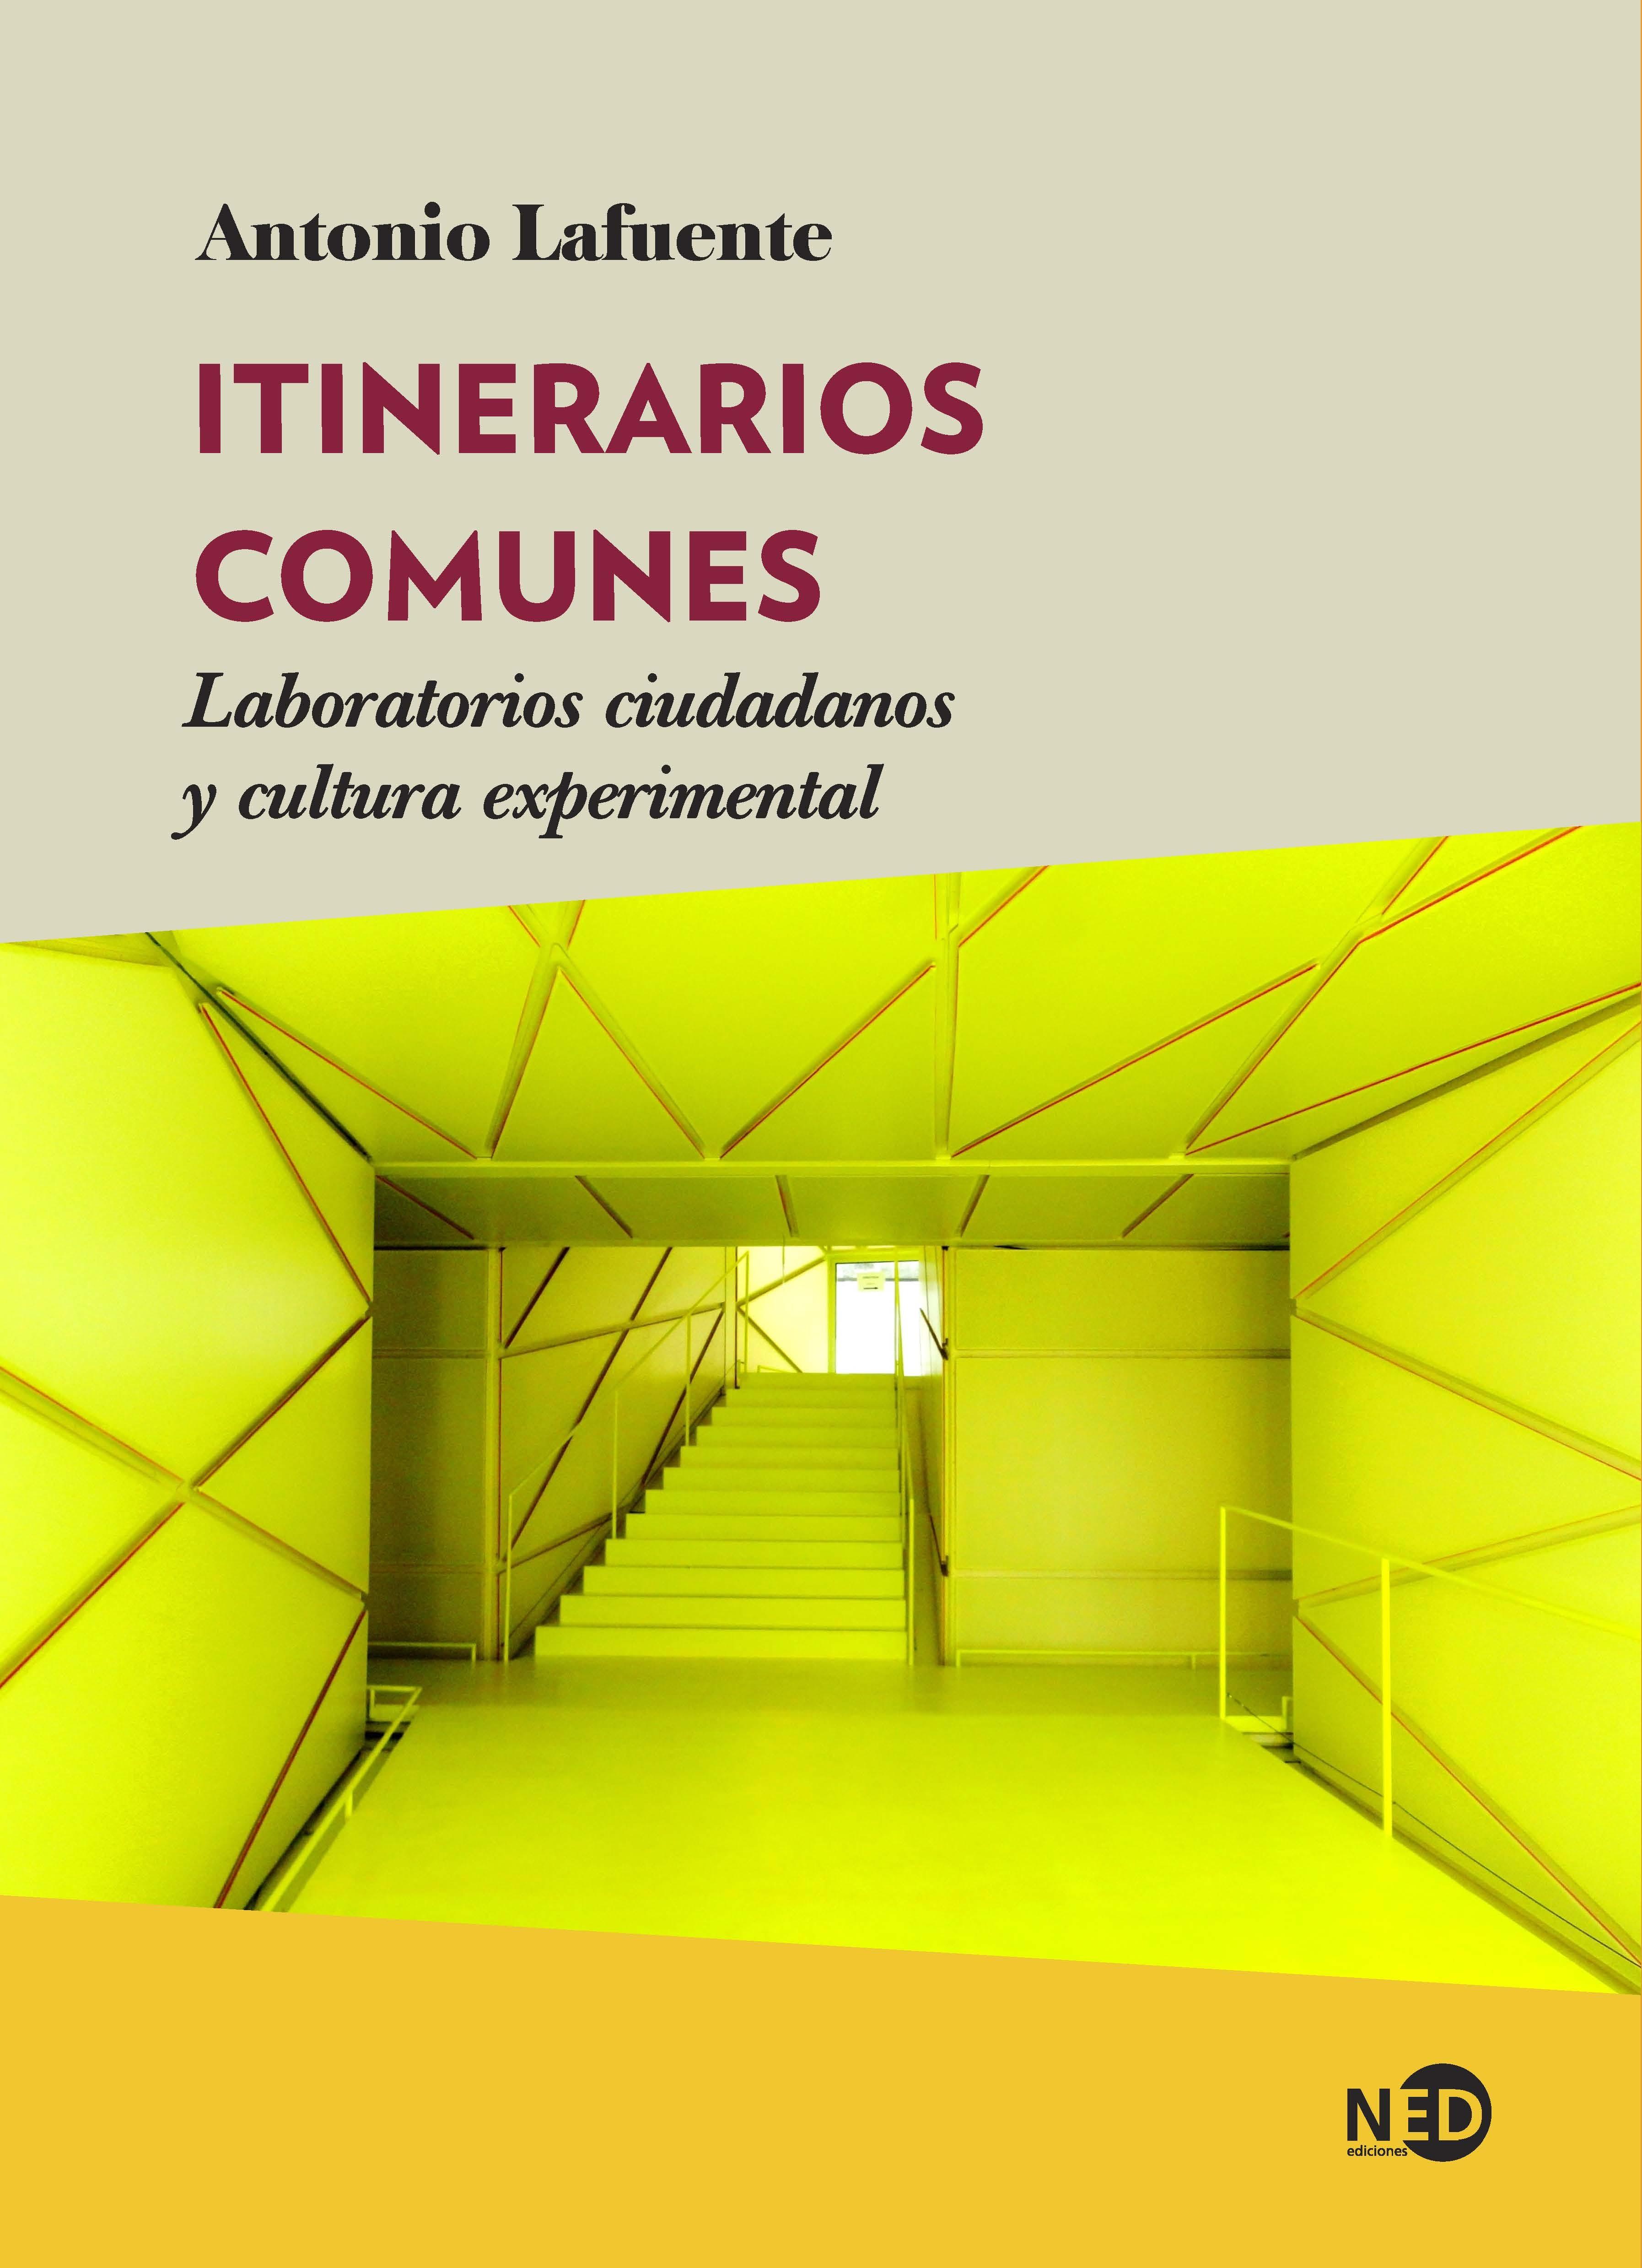 Itinerarios comunes "Laboratorios ciudadanos y cultura experimental"